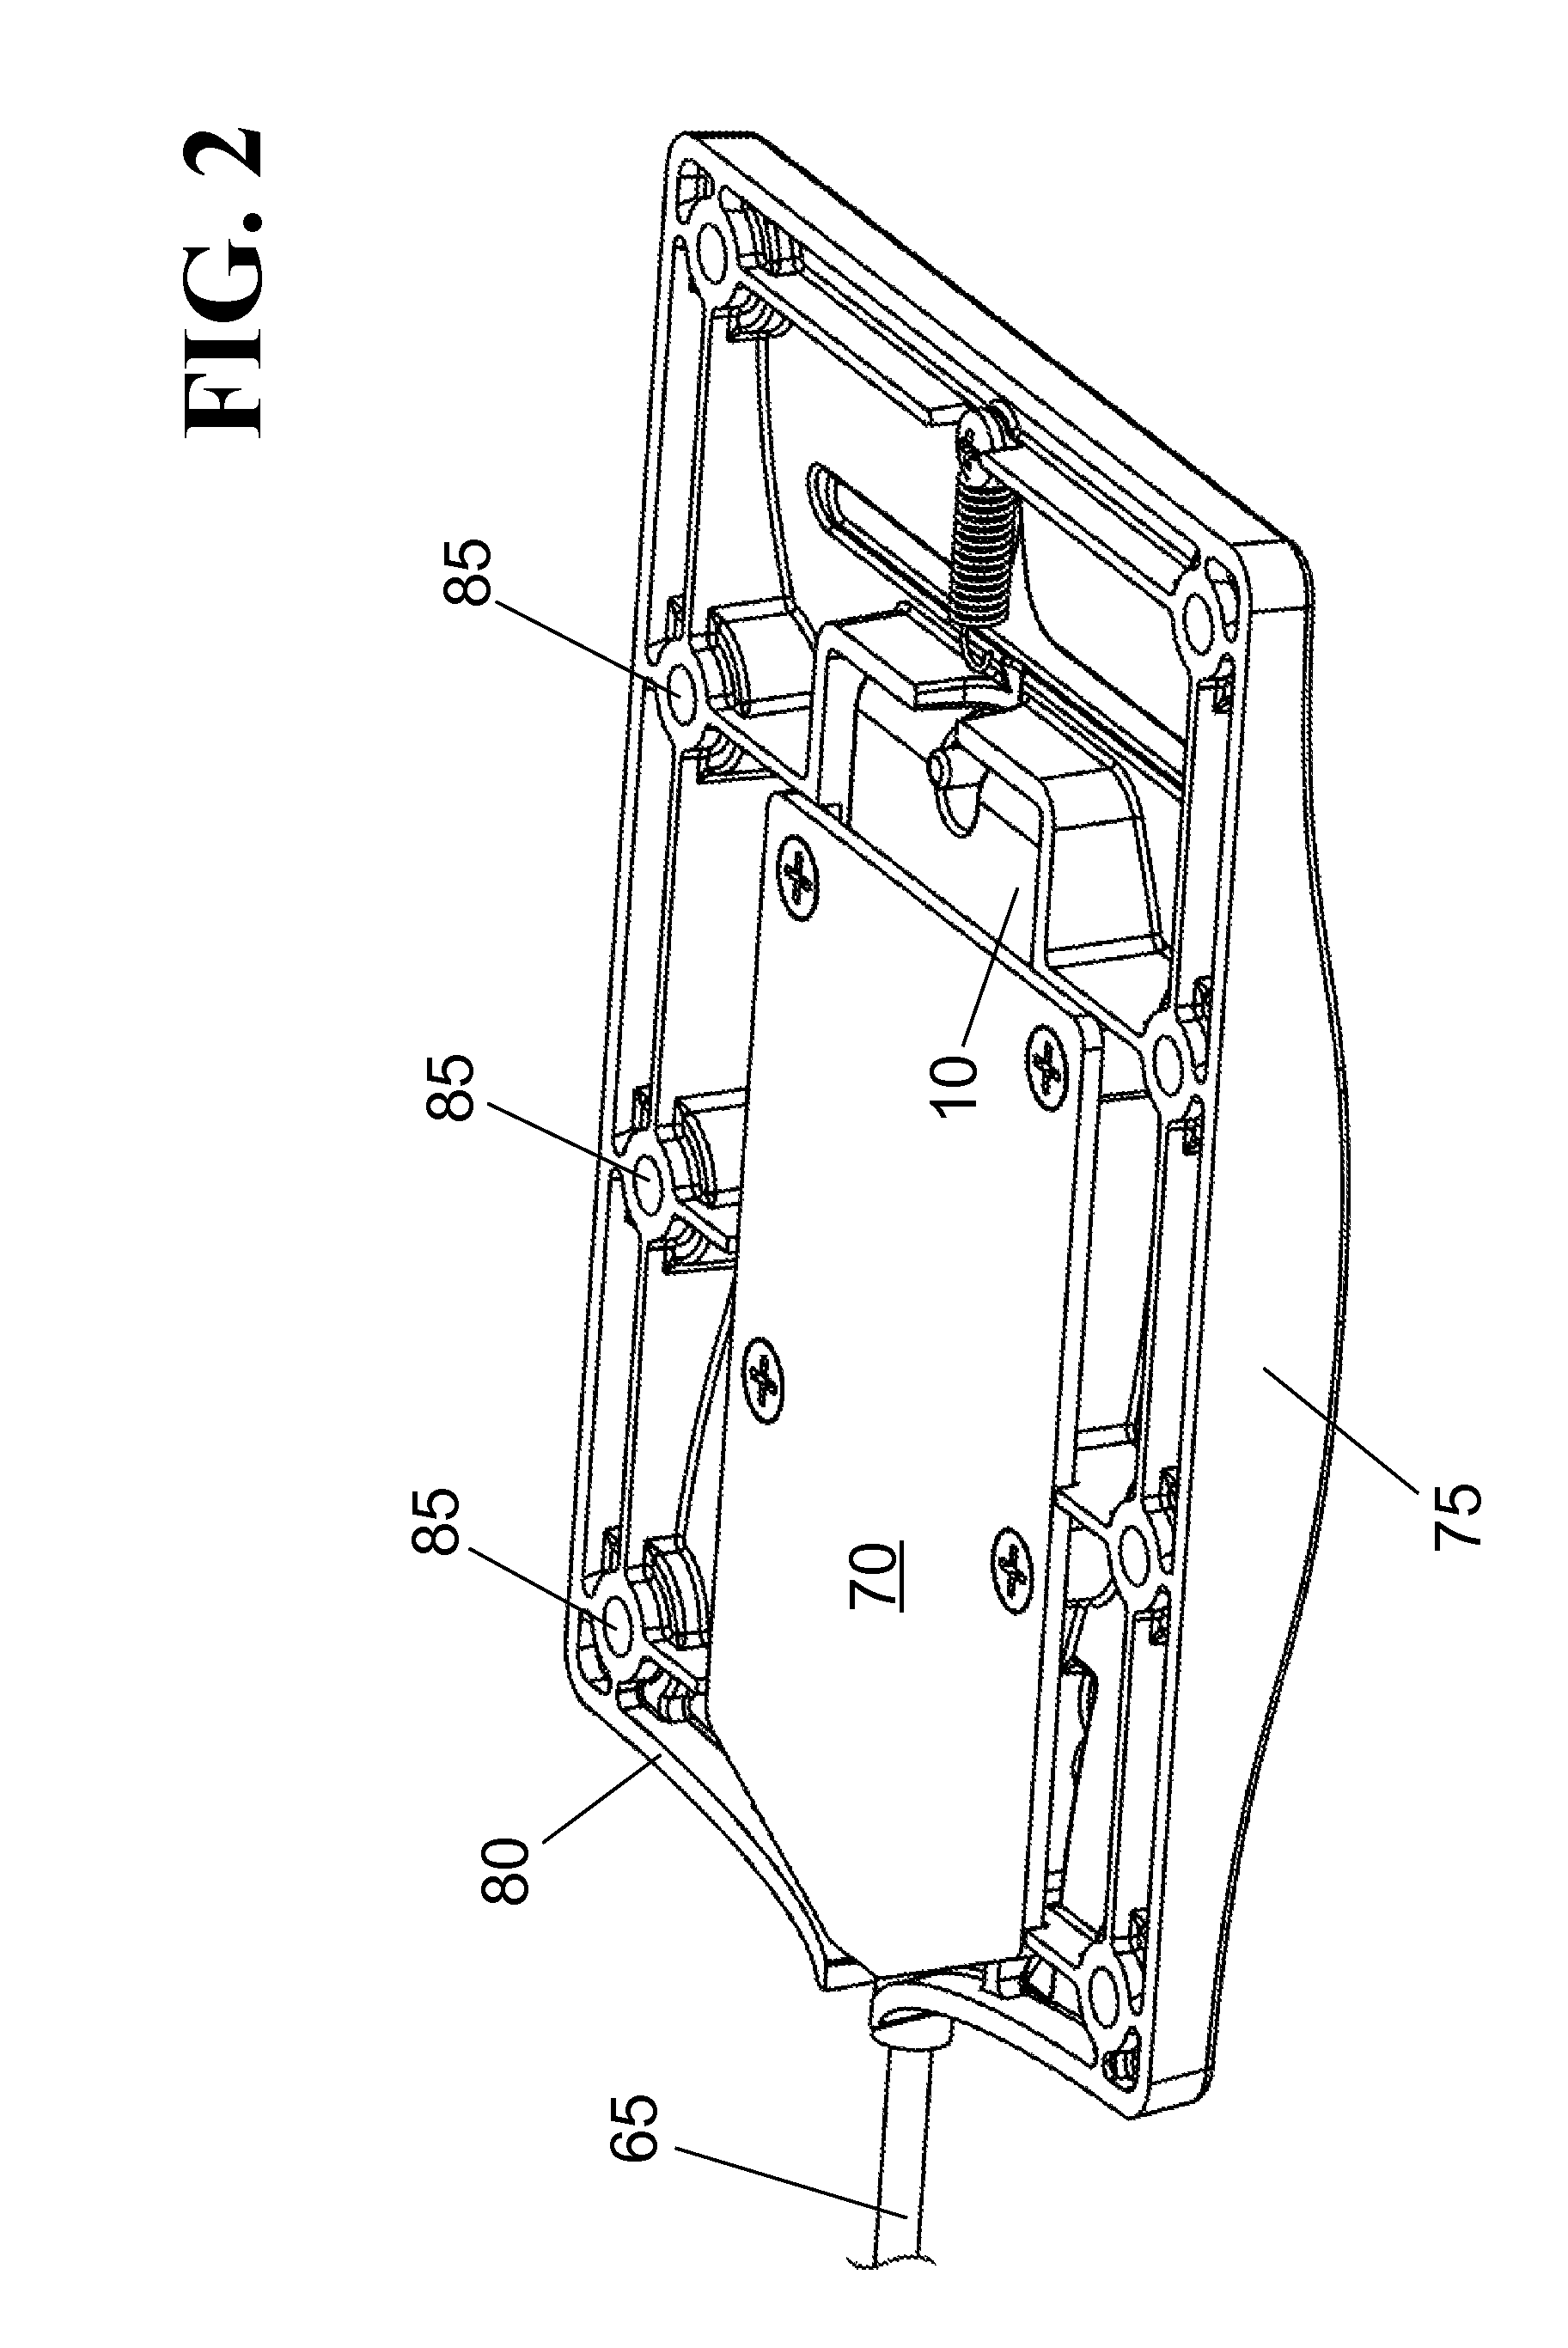 Flip-top table mechanism